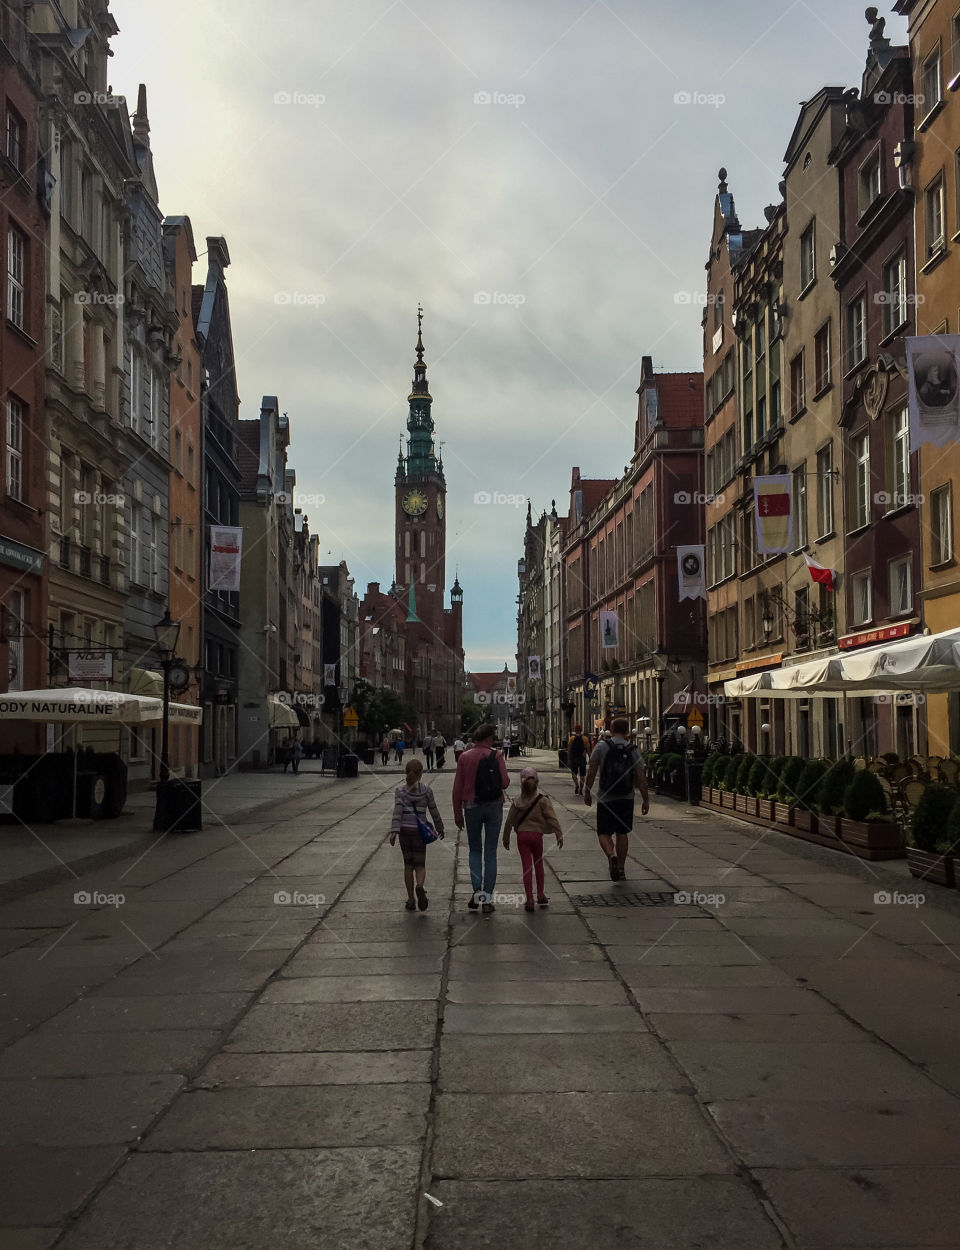 Gdansk,Poland